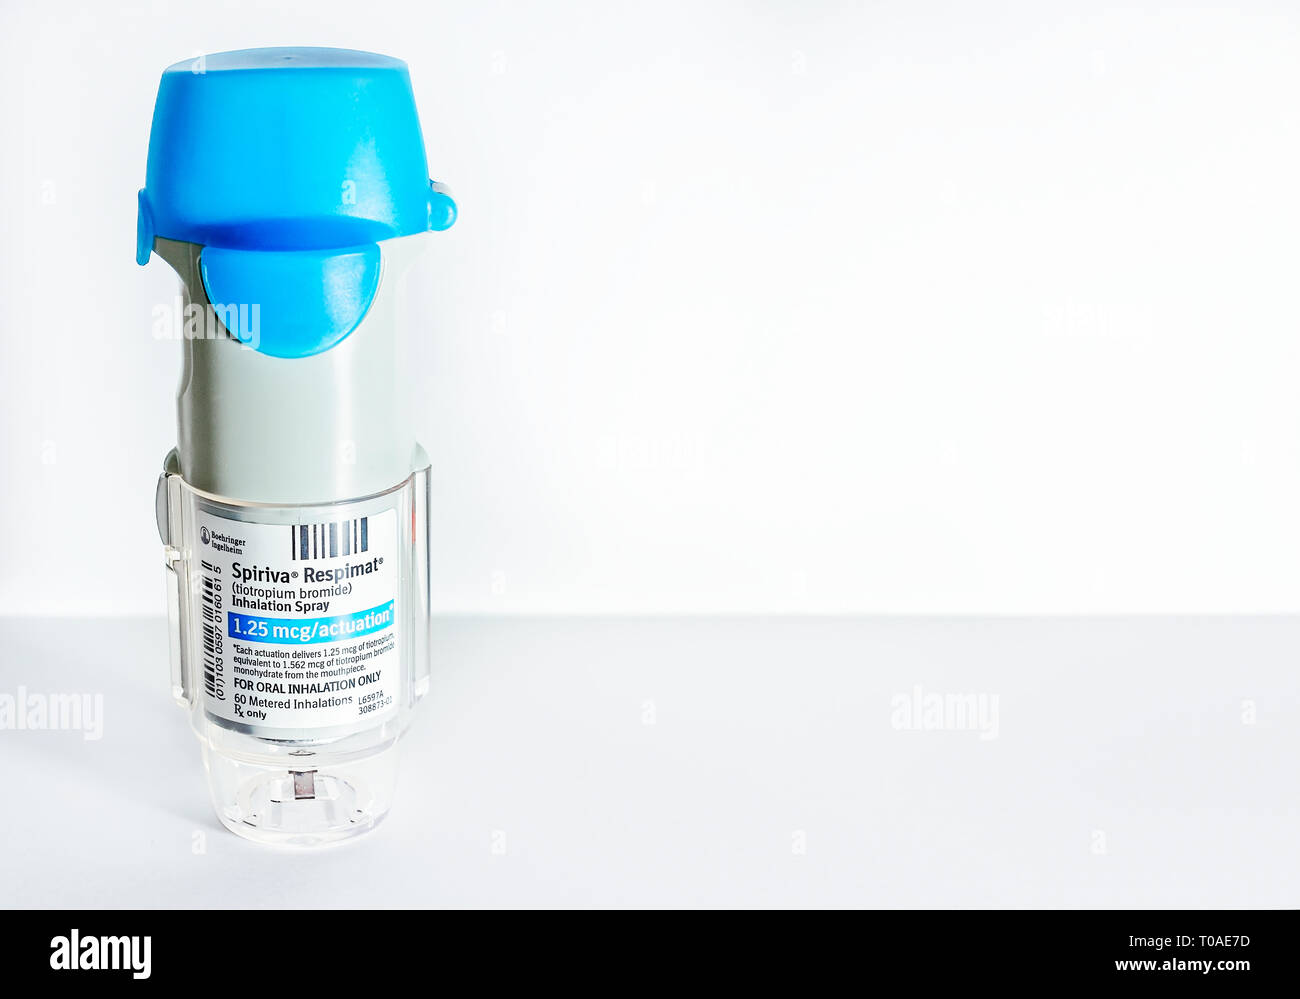 Spiriva Respimat, un populaire et compteur inhalateur pour l'asthme et la MPOC, est représenté sur le blanc. Spiriva, un bronchodilatateur, est fabriqué par Boehringer Ingelheim. Banque D'Images